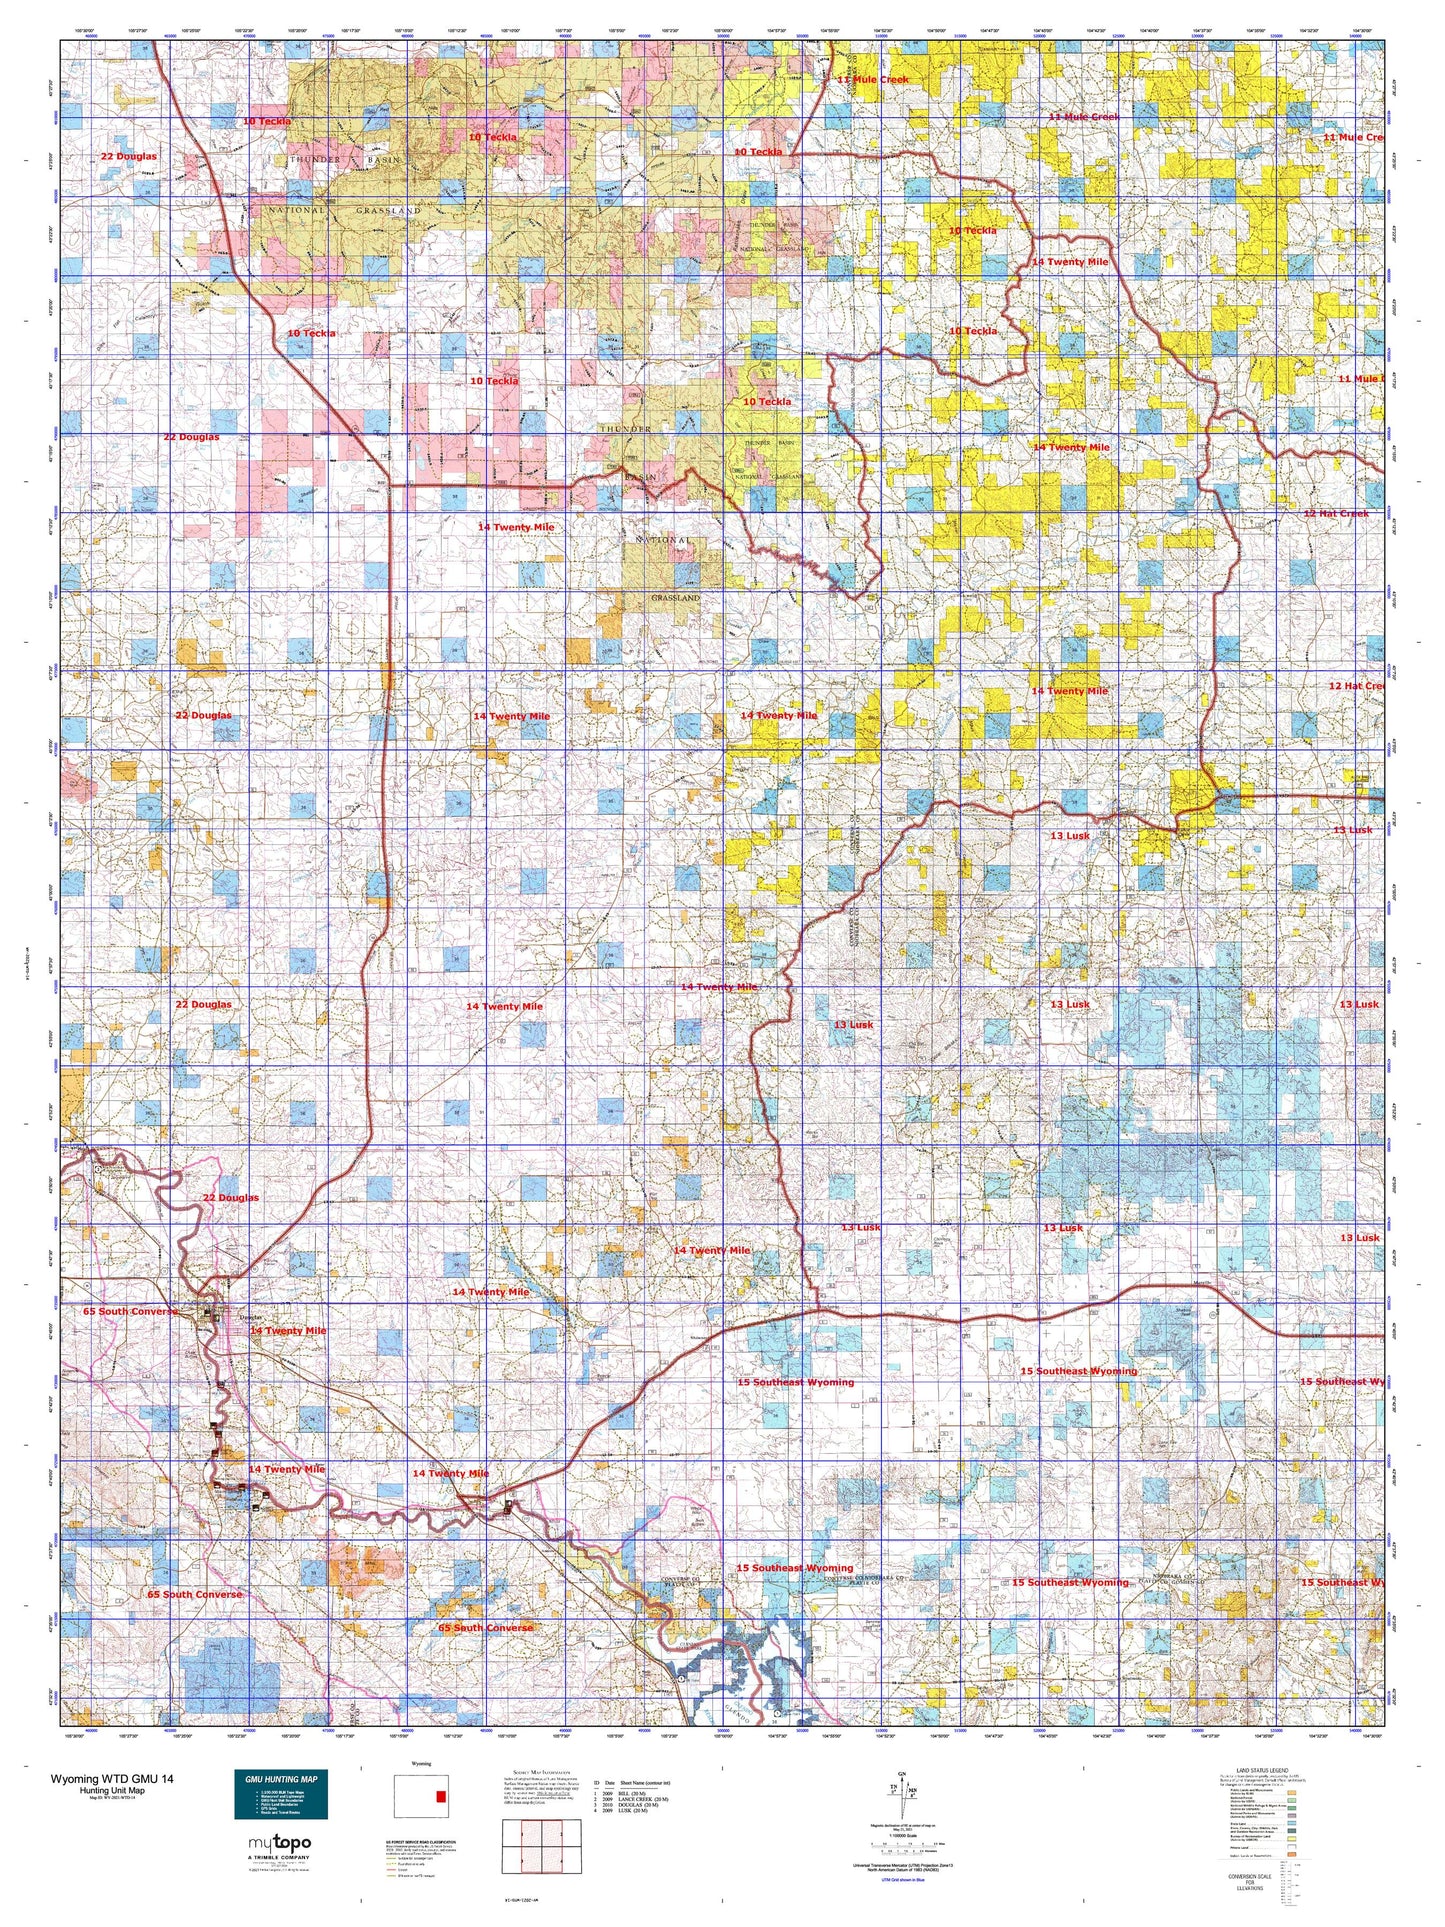 Wyoming Whitetail Deer GMU 14 Map Image